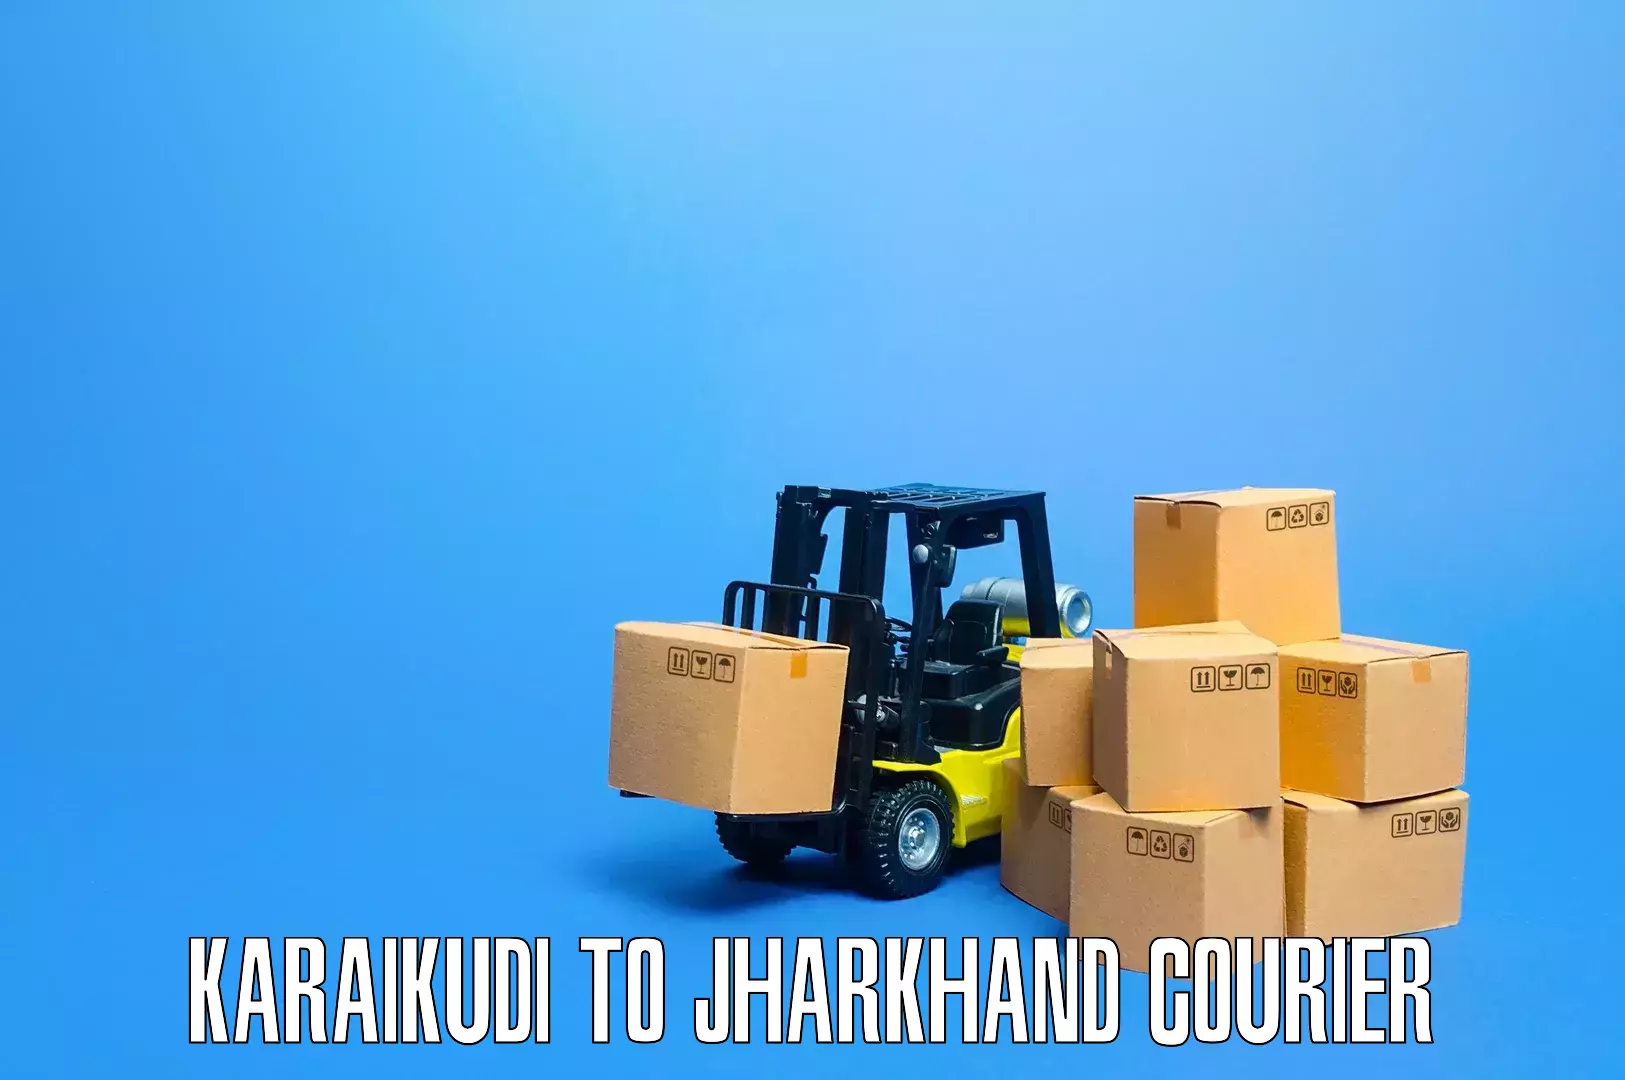 Professional furniture transport Karaikudi to Chhatarpur Palamu